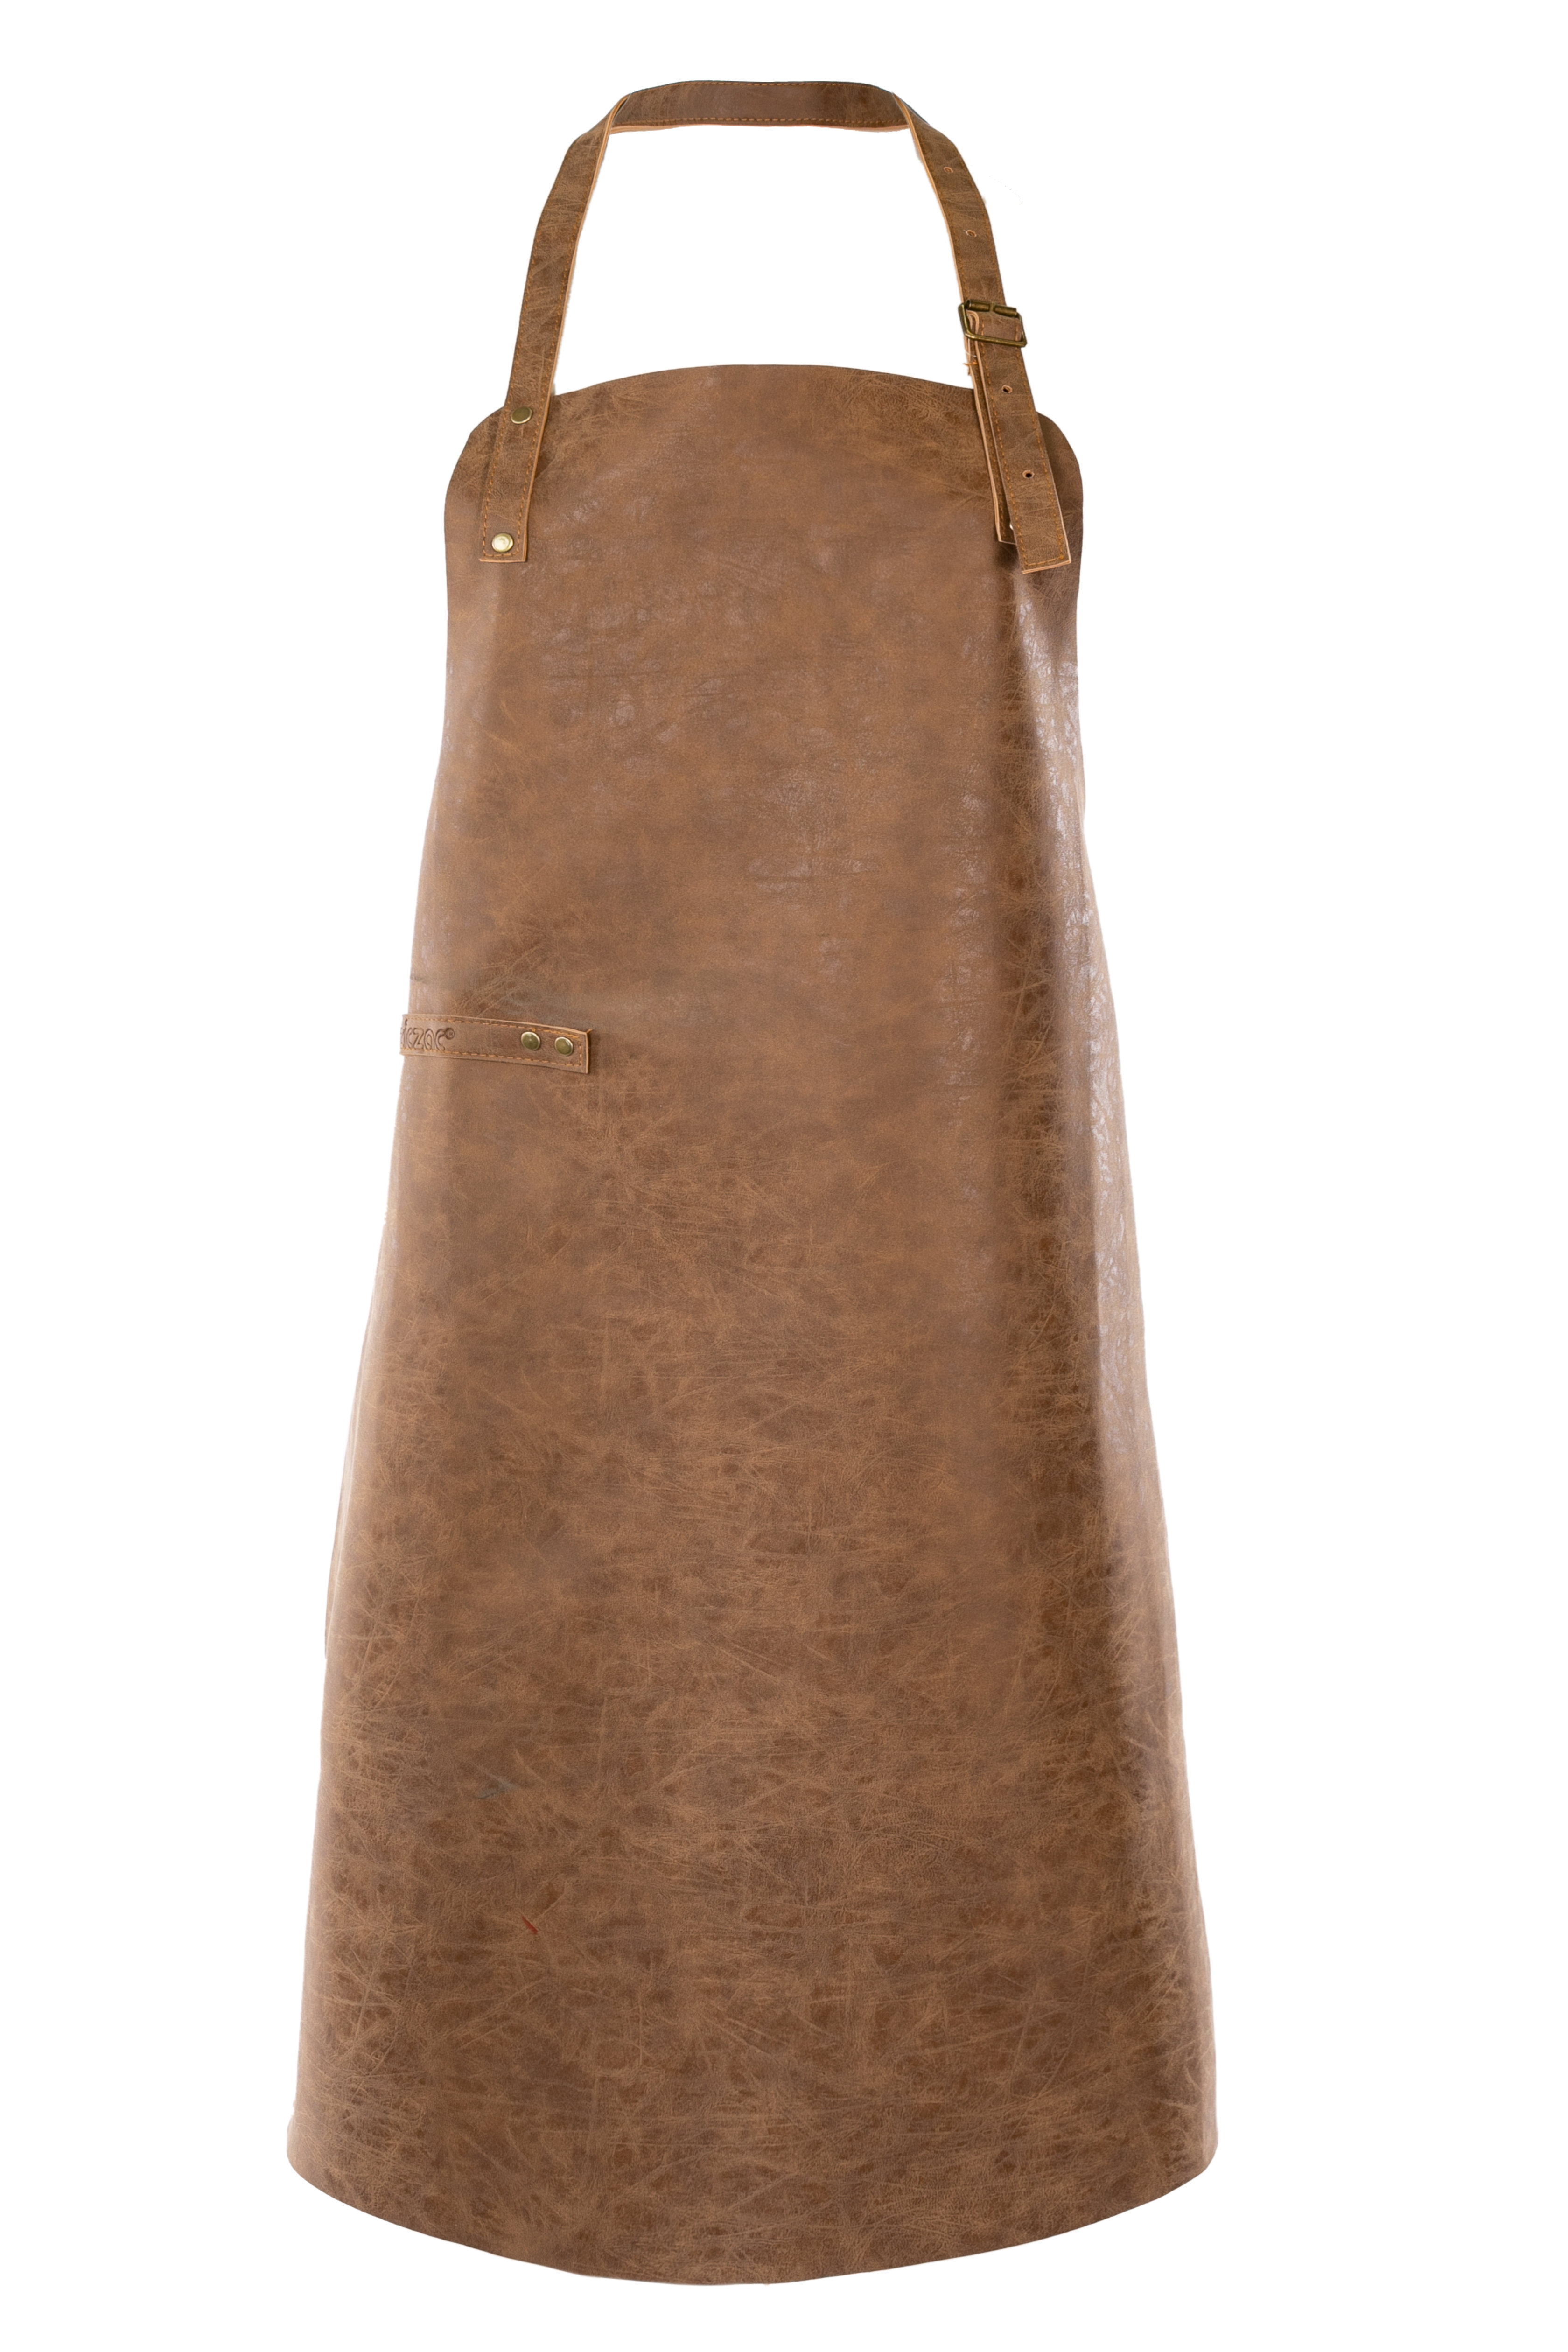 Schort TRUMAN (Towel loop - no pocket - opt. Accessory bag), 70x90 cm, walnut